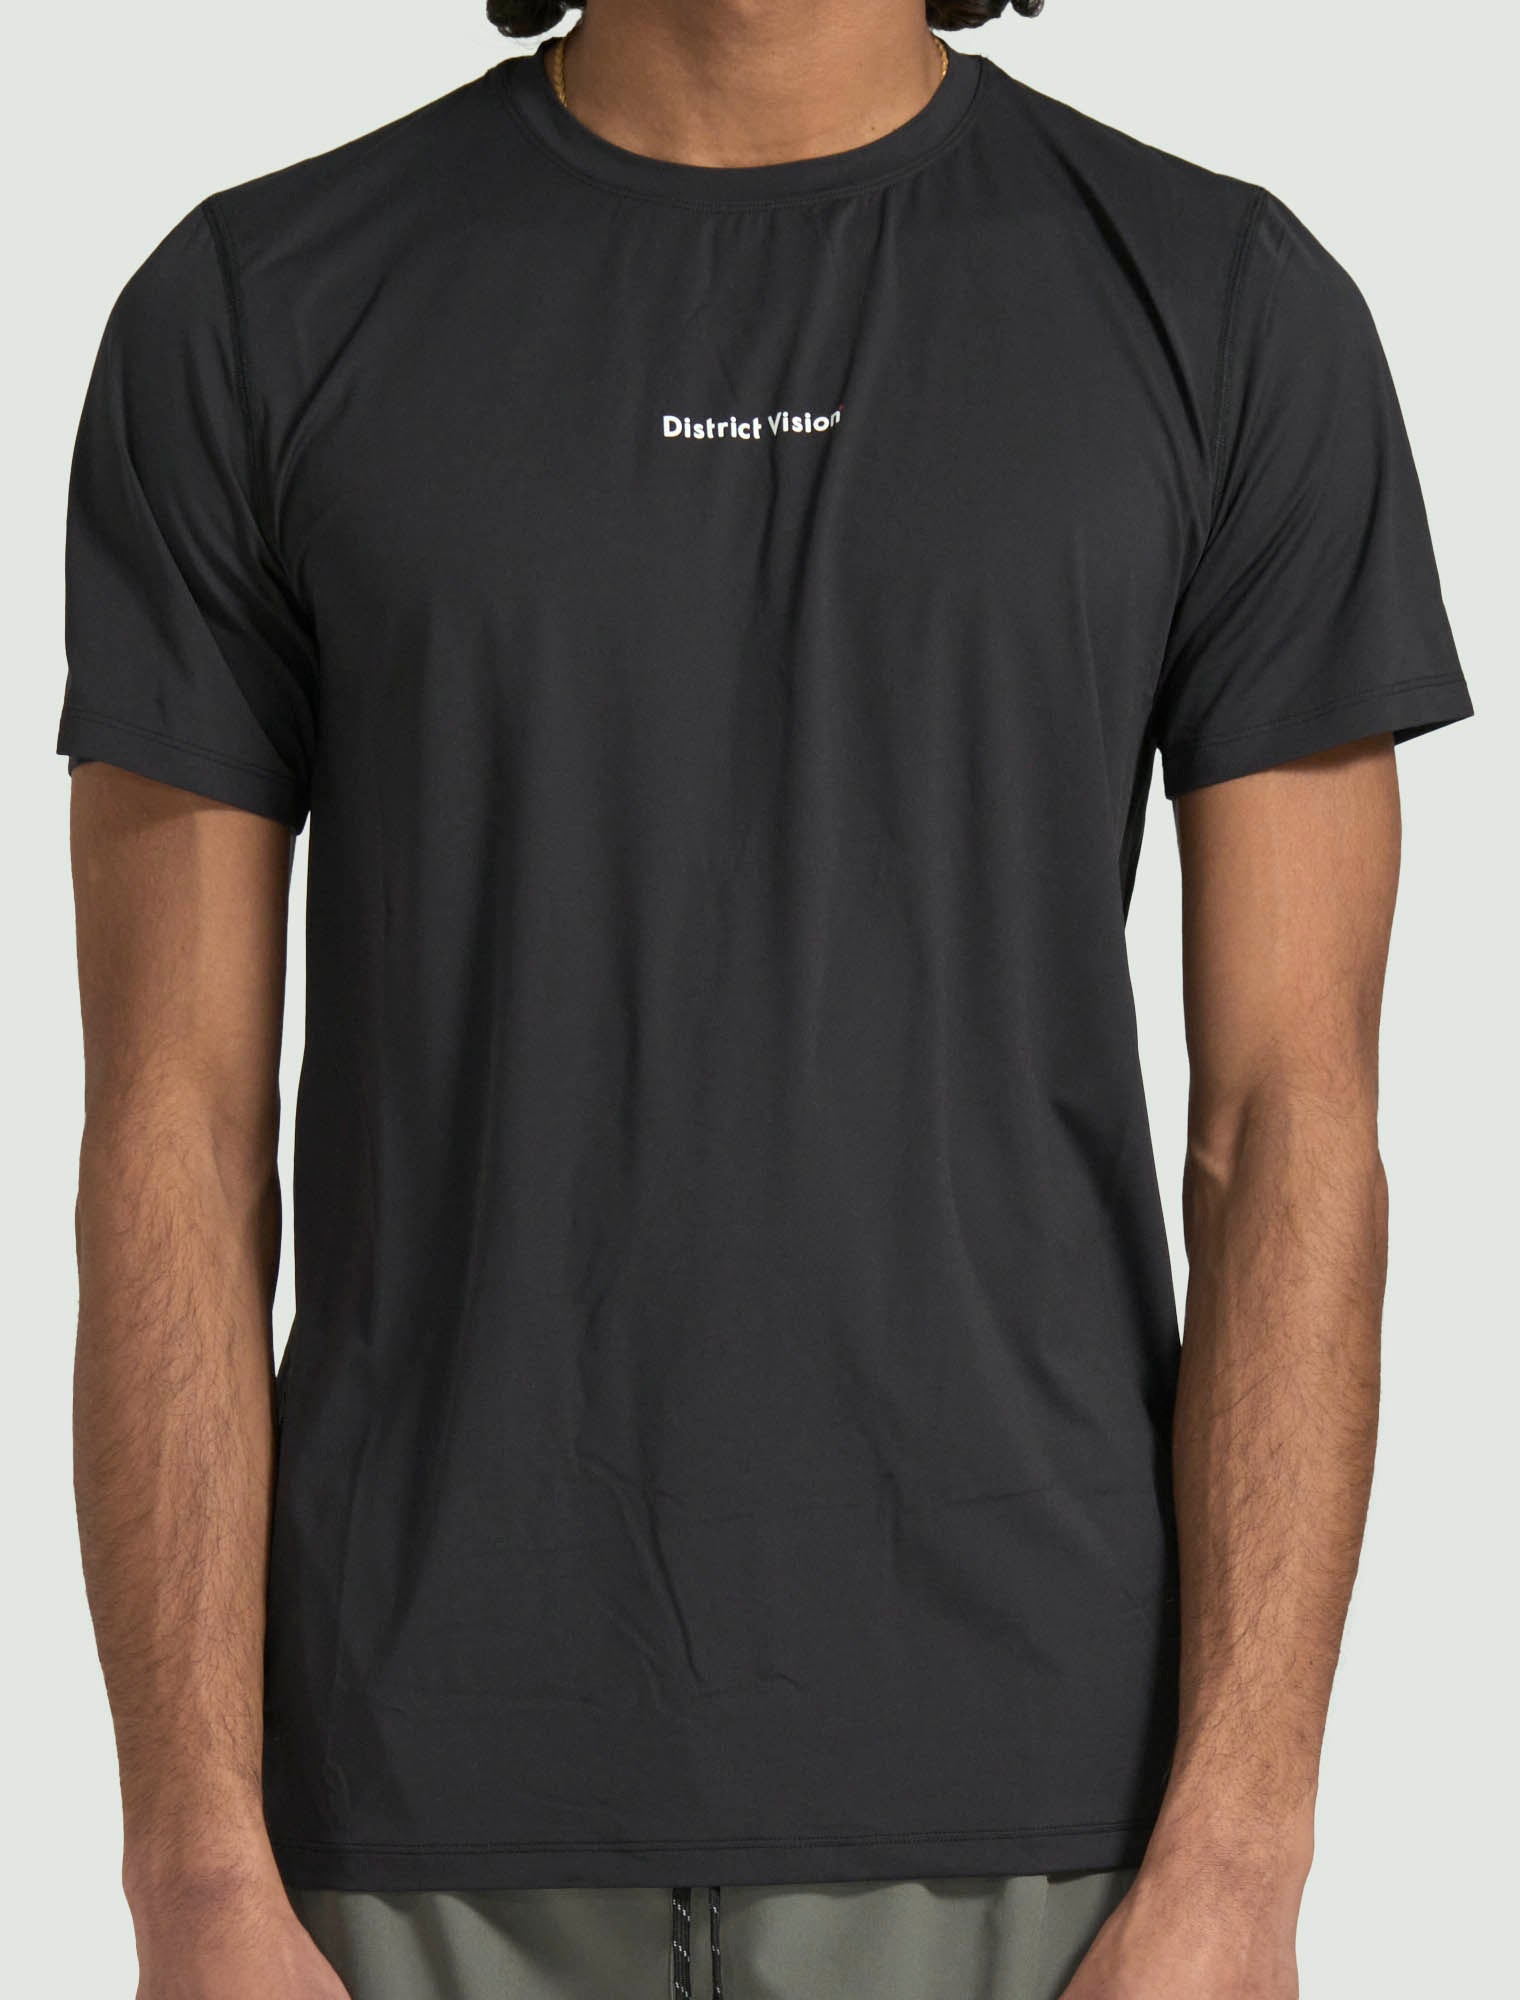 Aloe Short Sleeve T-Shirt - Black